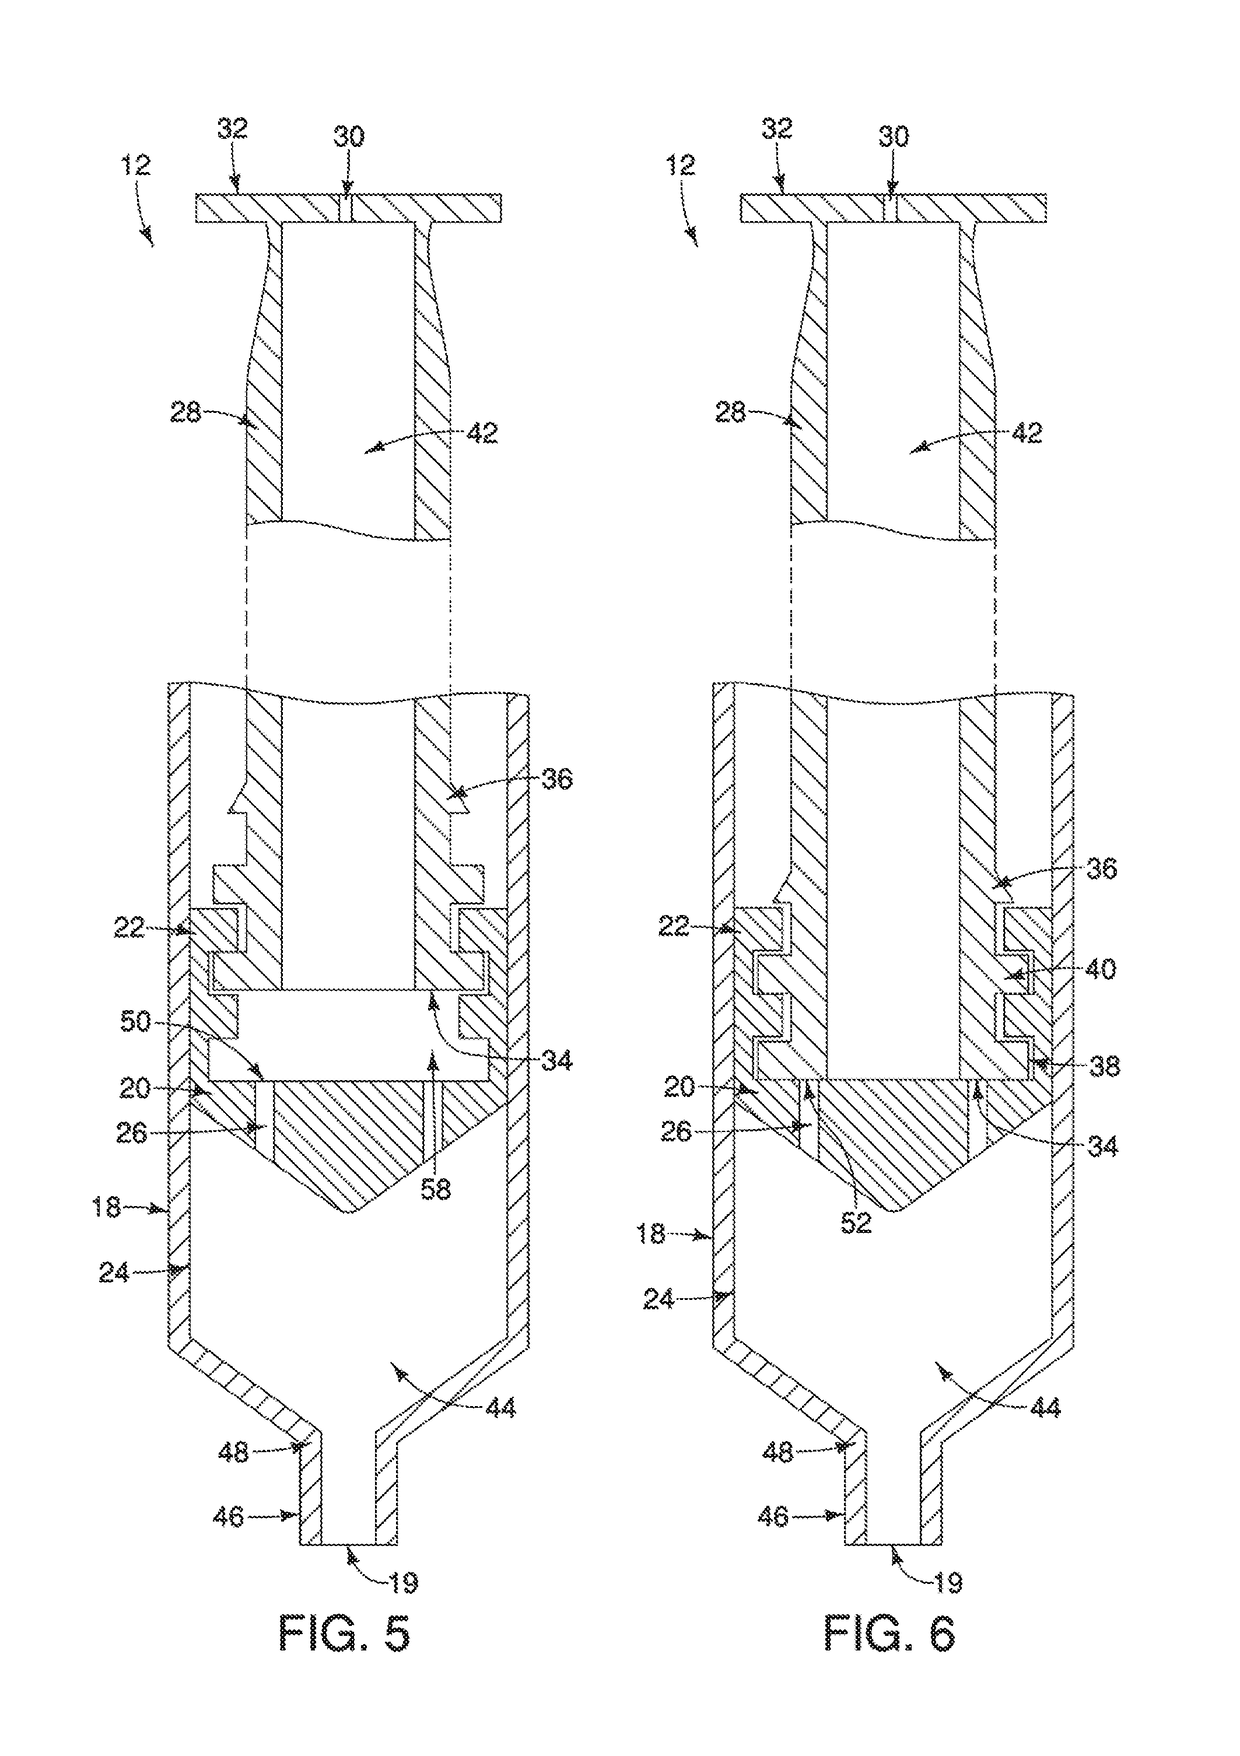 Novel syringe system for fluid separation